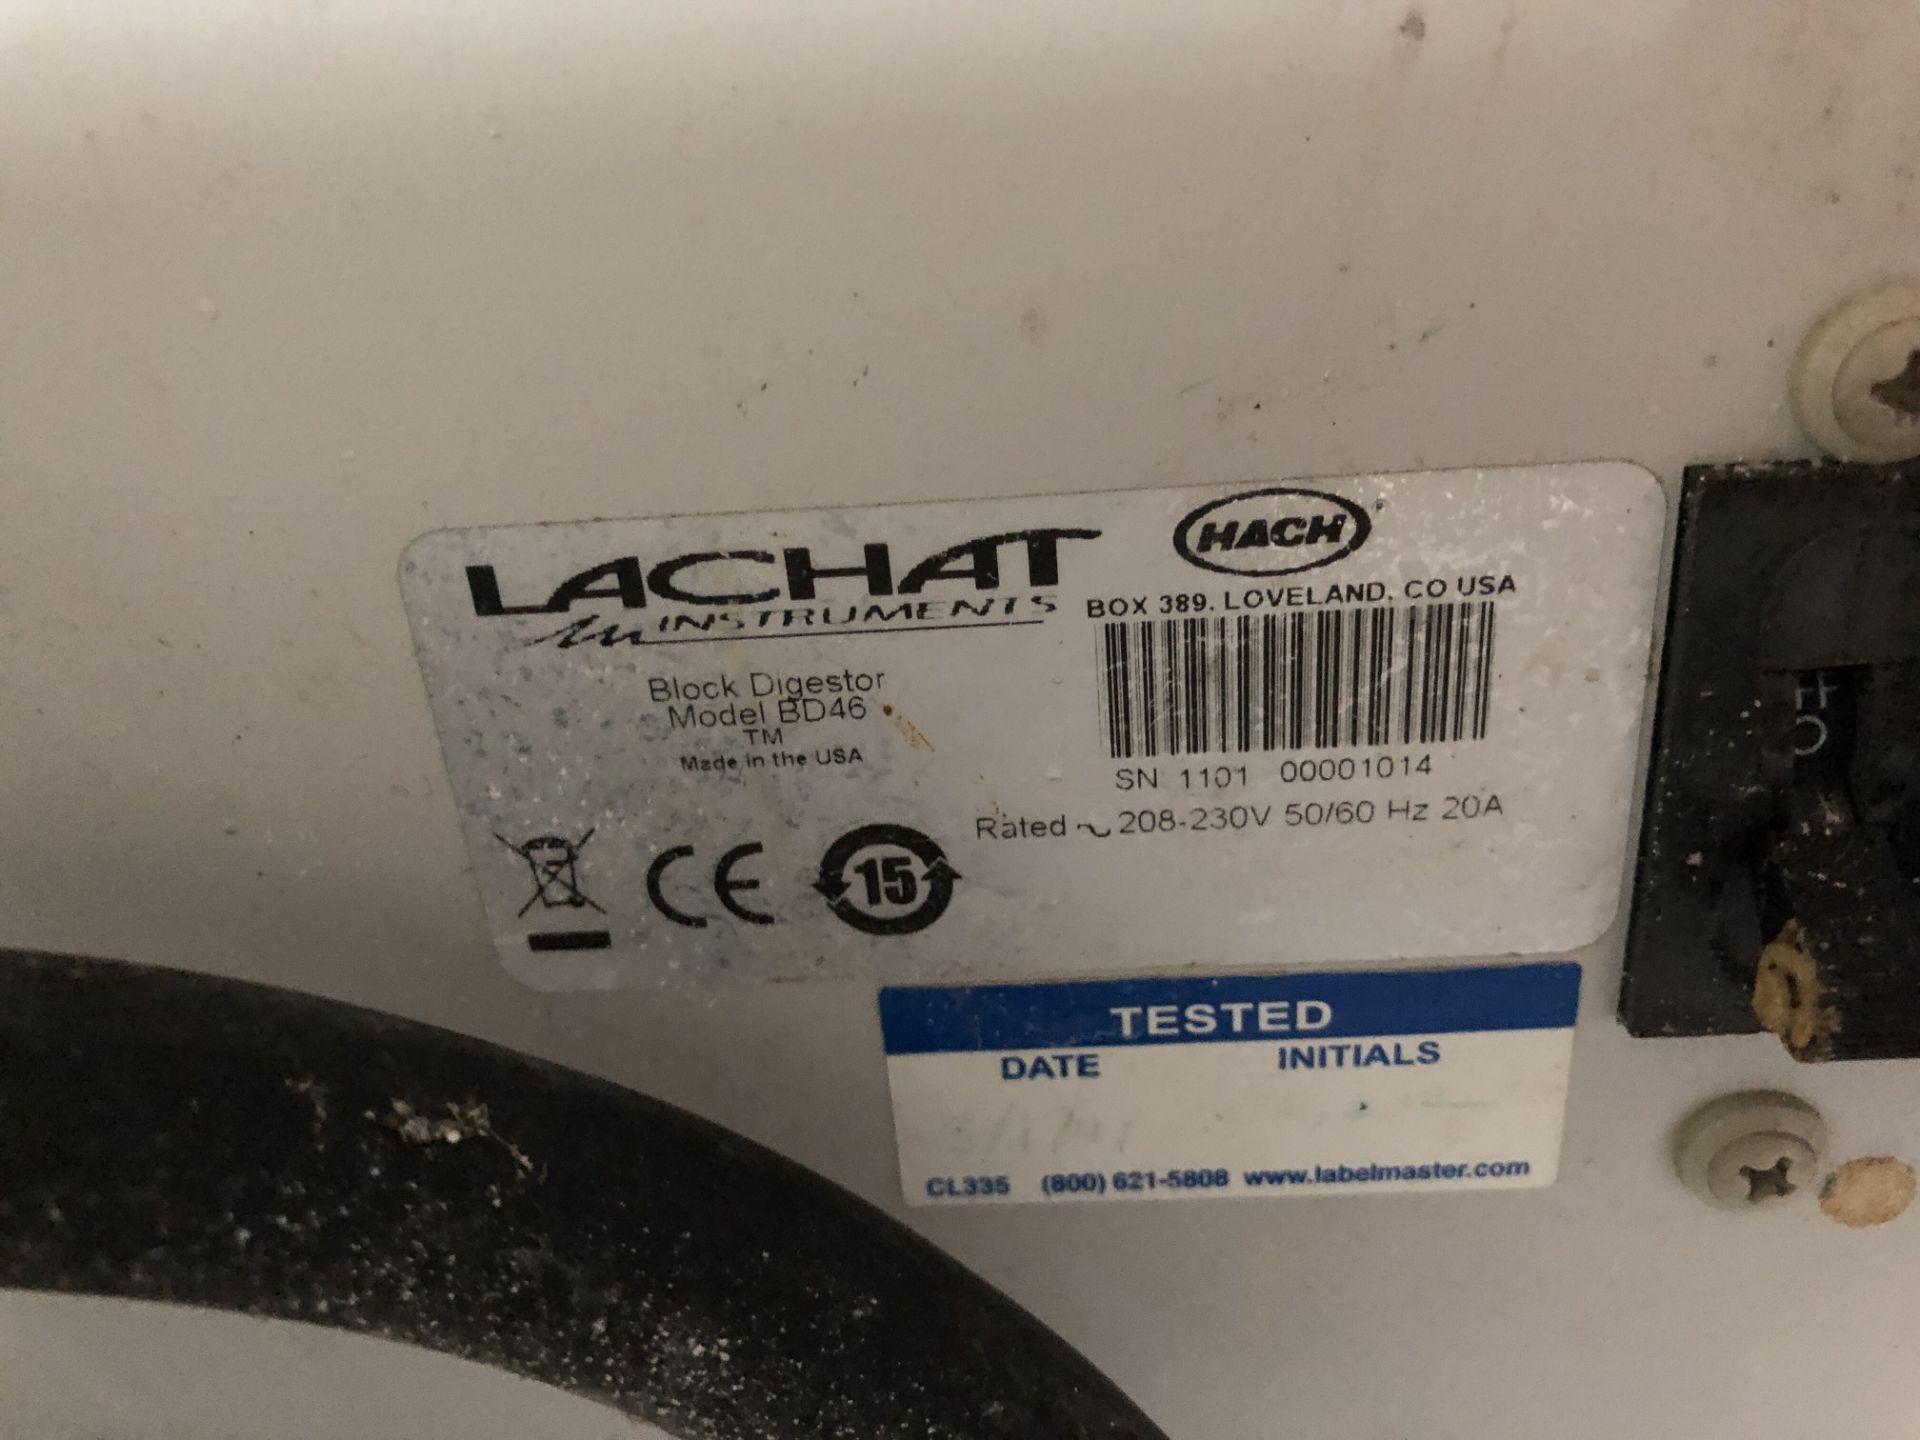 Lachat BD-46 Block Digestor (sample heaters) - Image 4 of 5